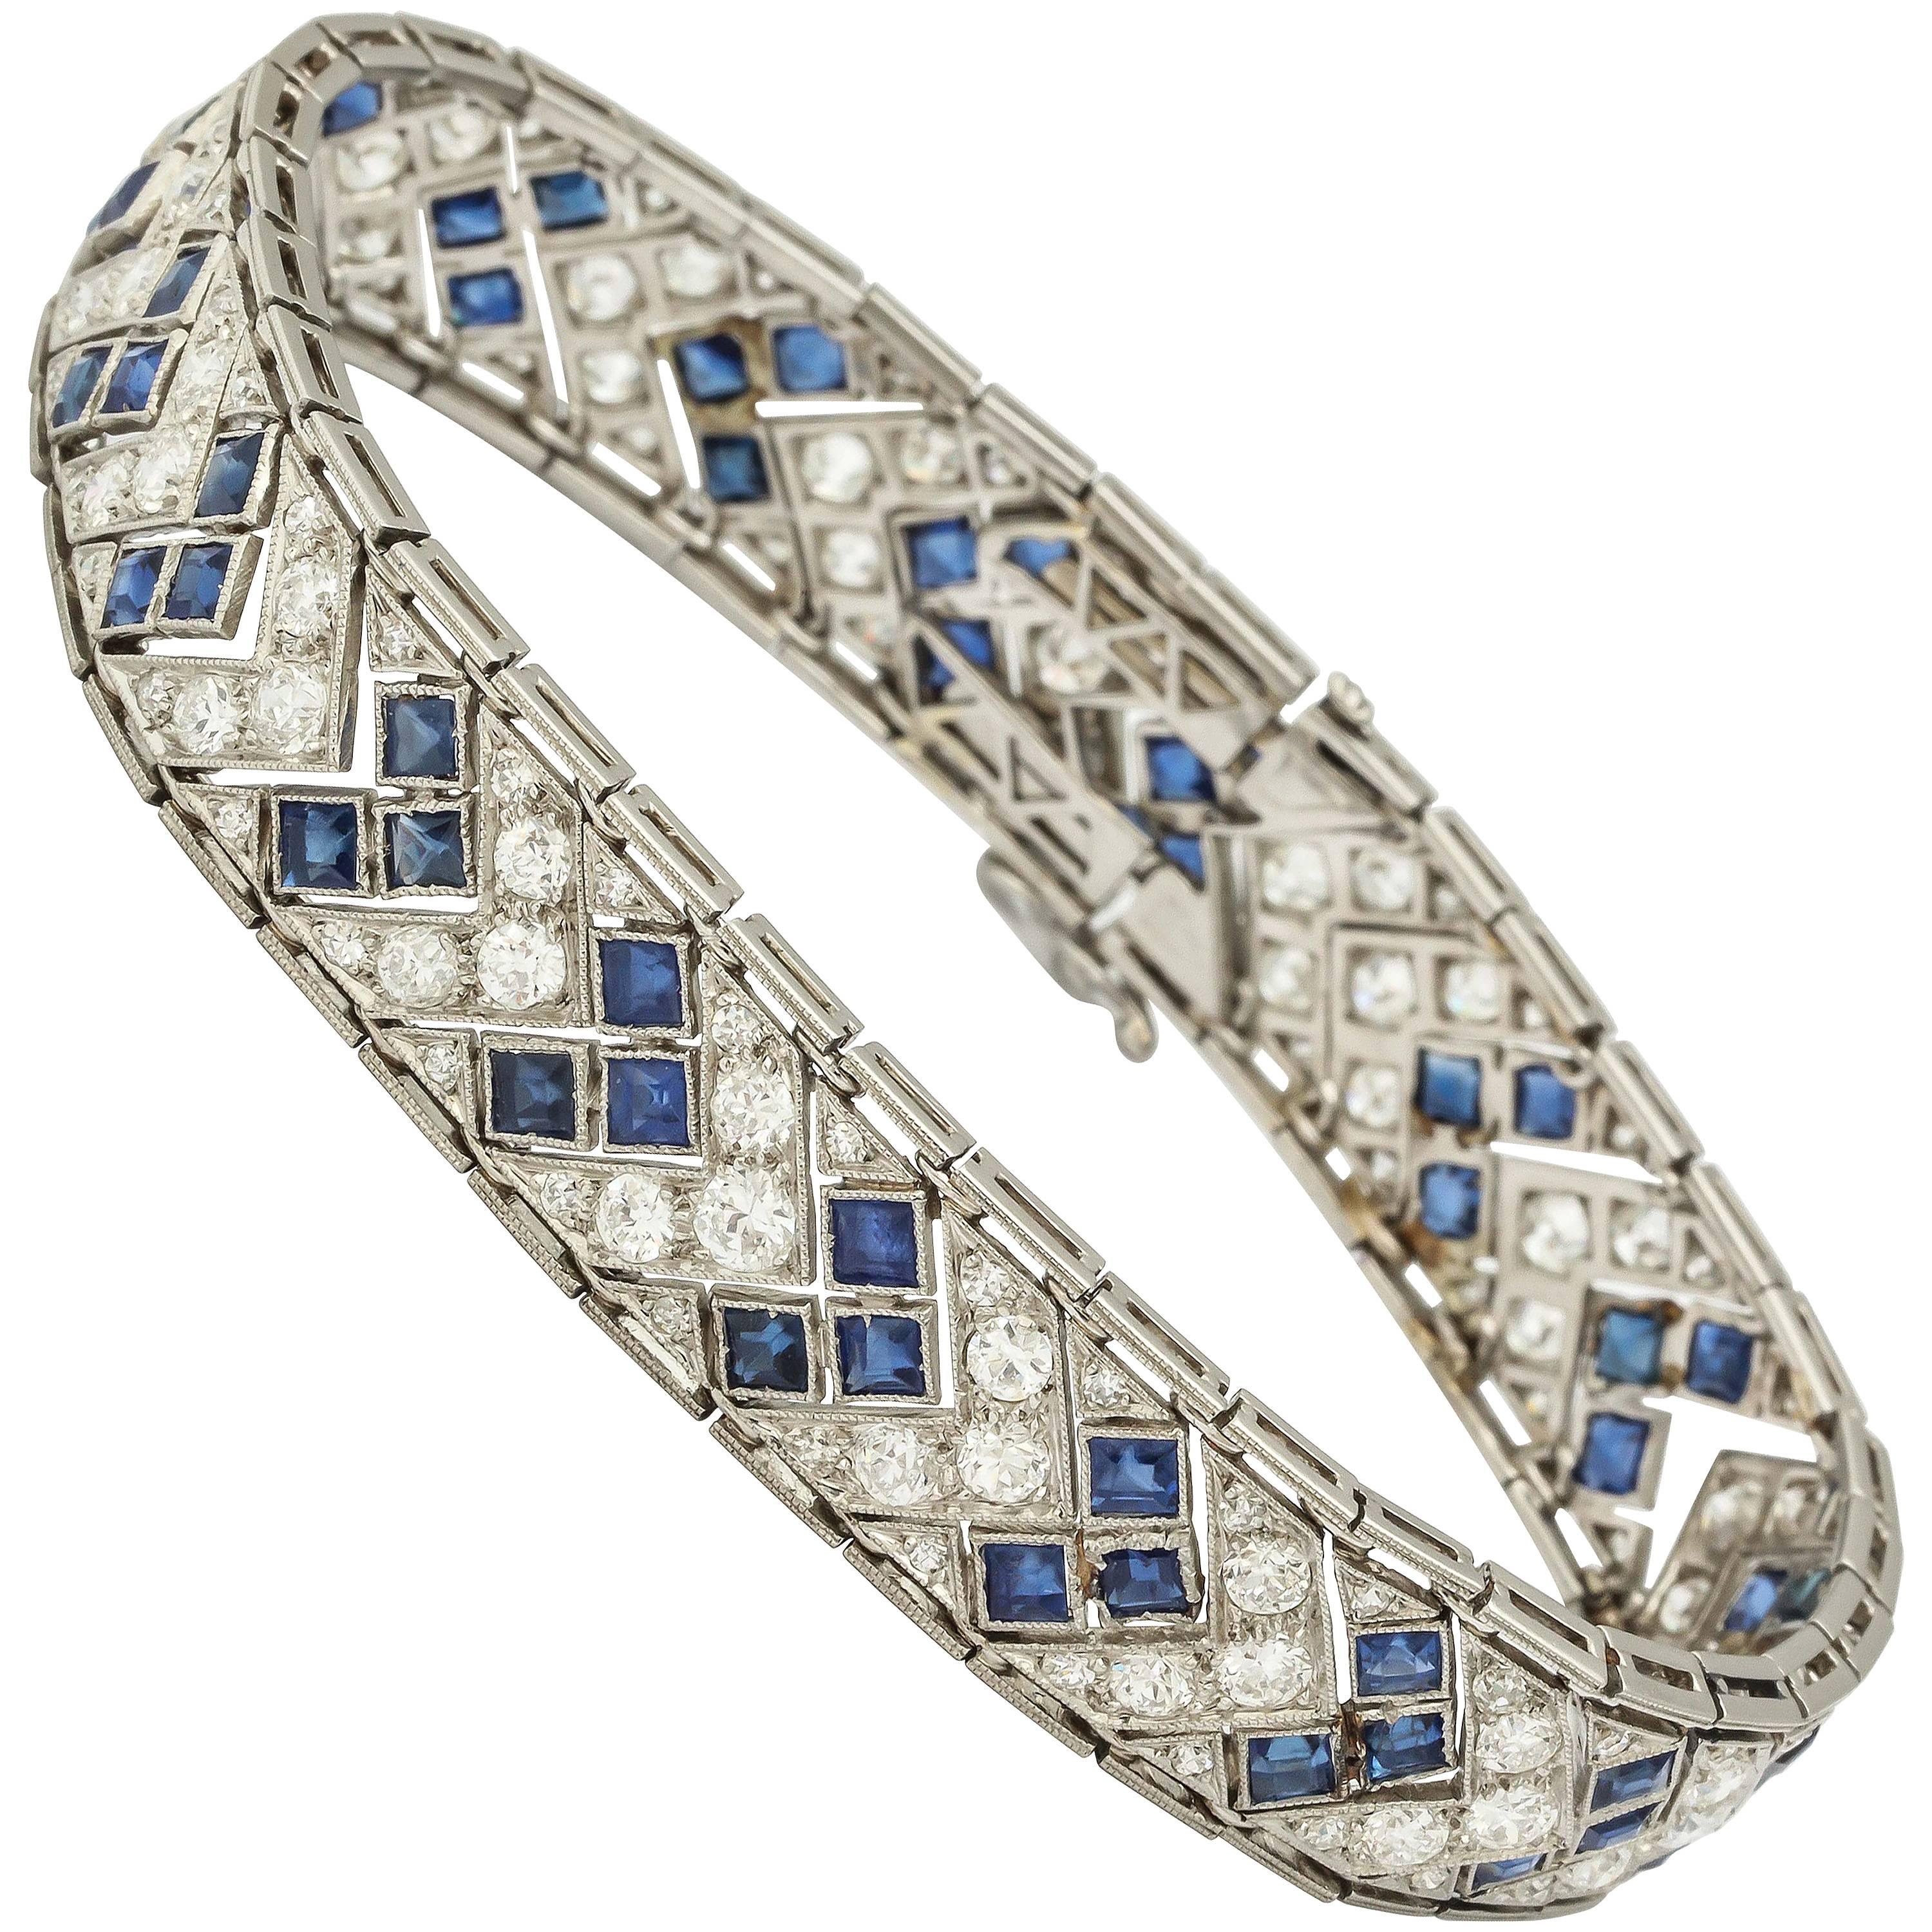 1920s Art Deco French Cut Sapphire Diamond Platinum Flexible Bracelet